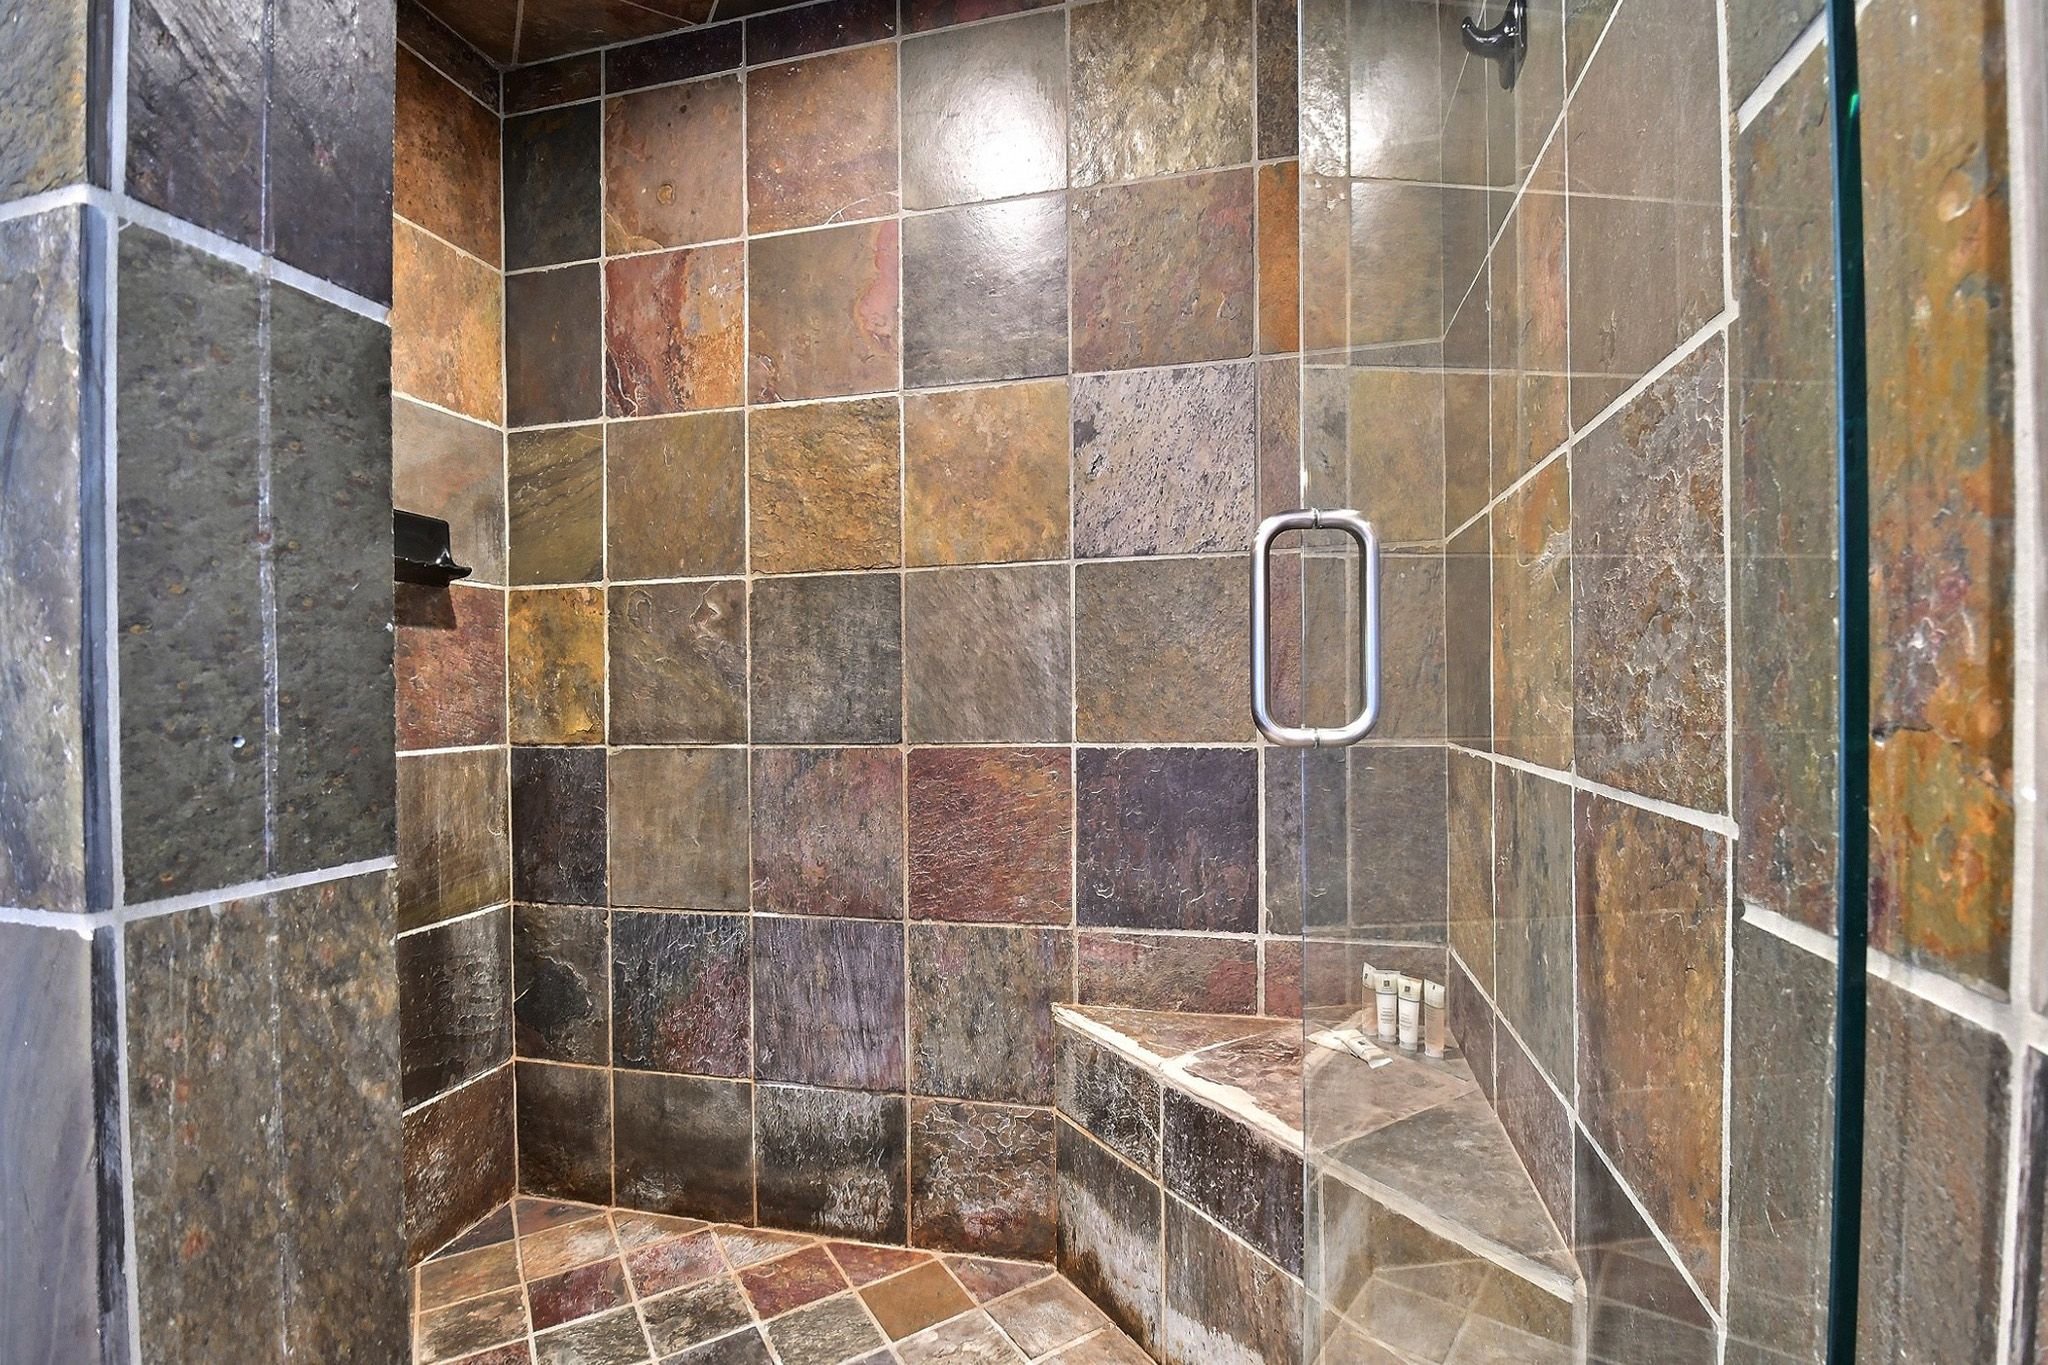 Ensuite master bathroom features a huge slate shower.